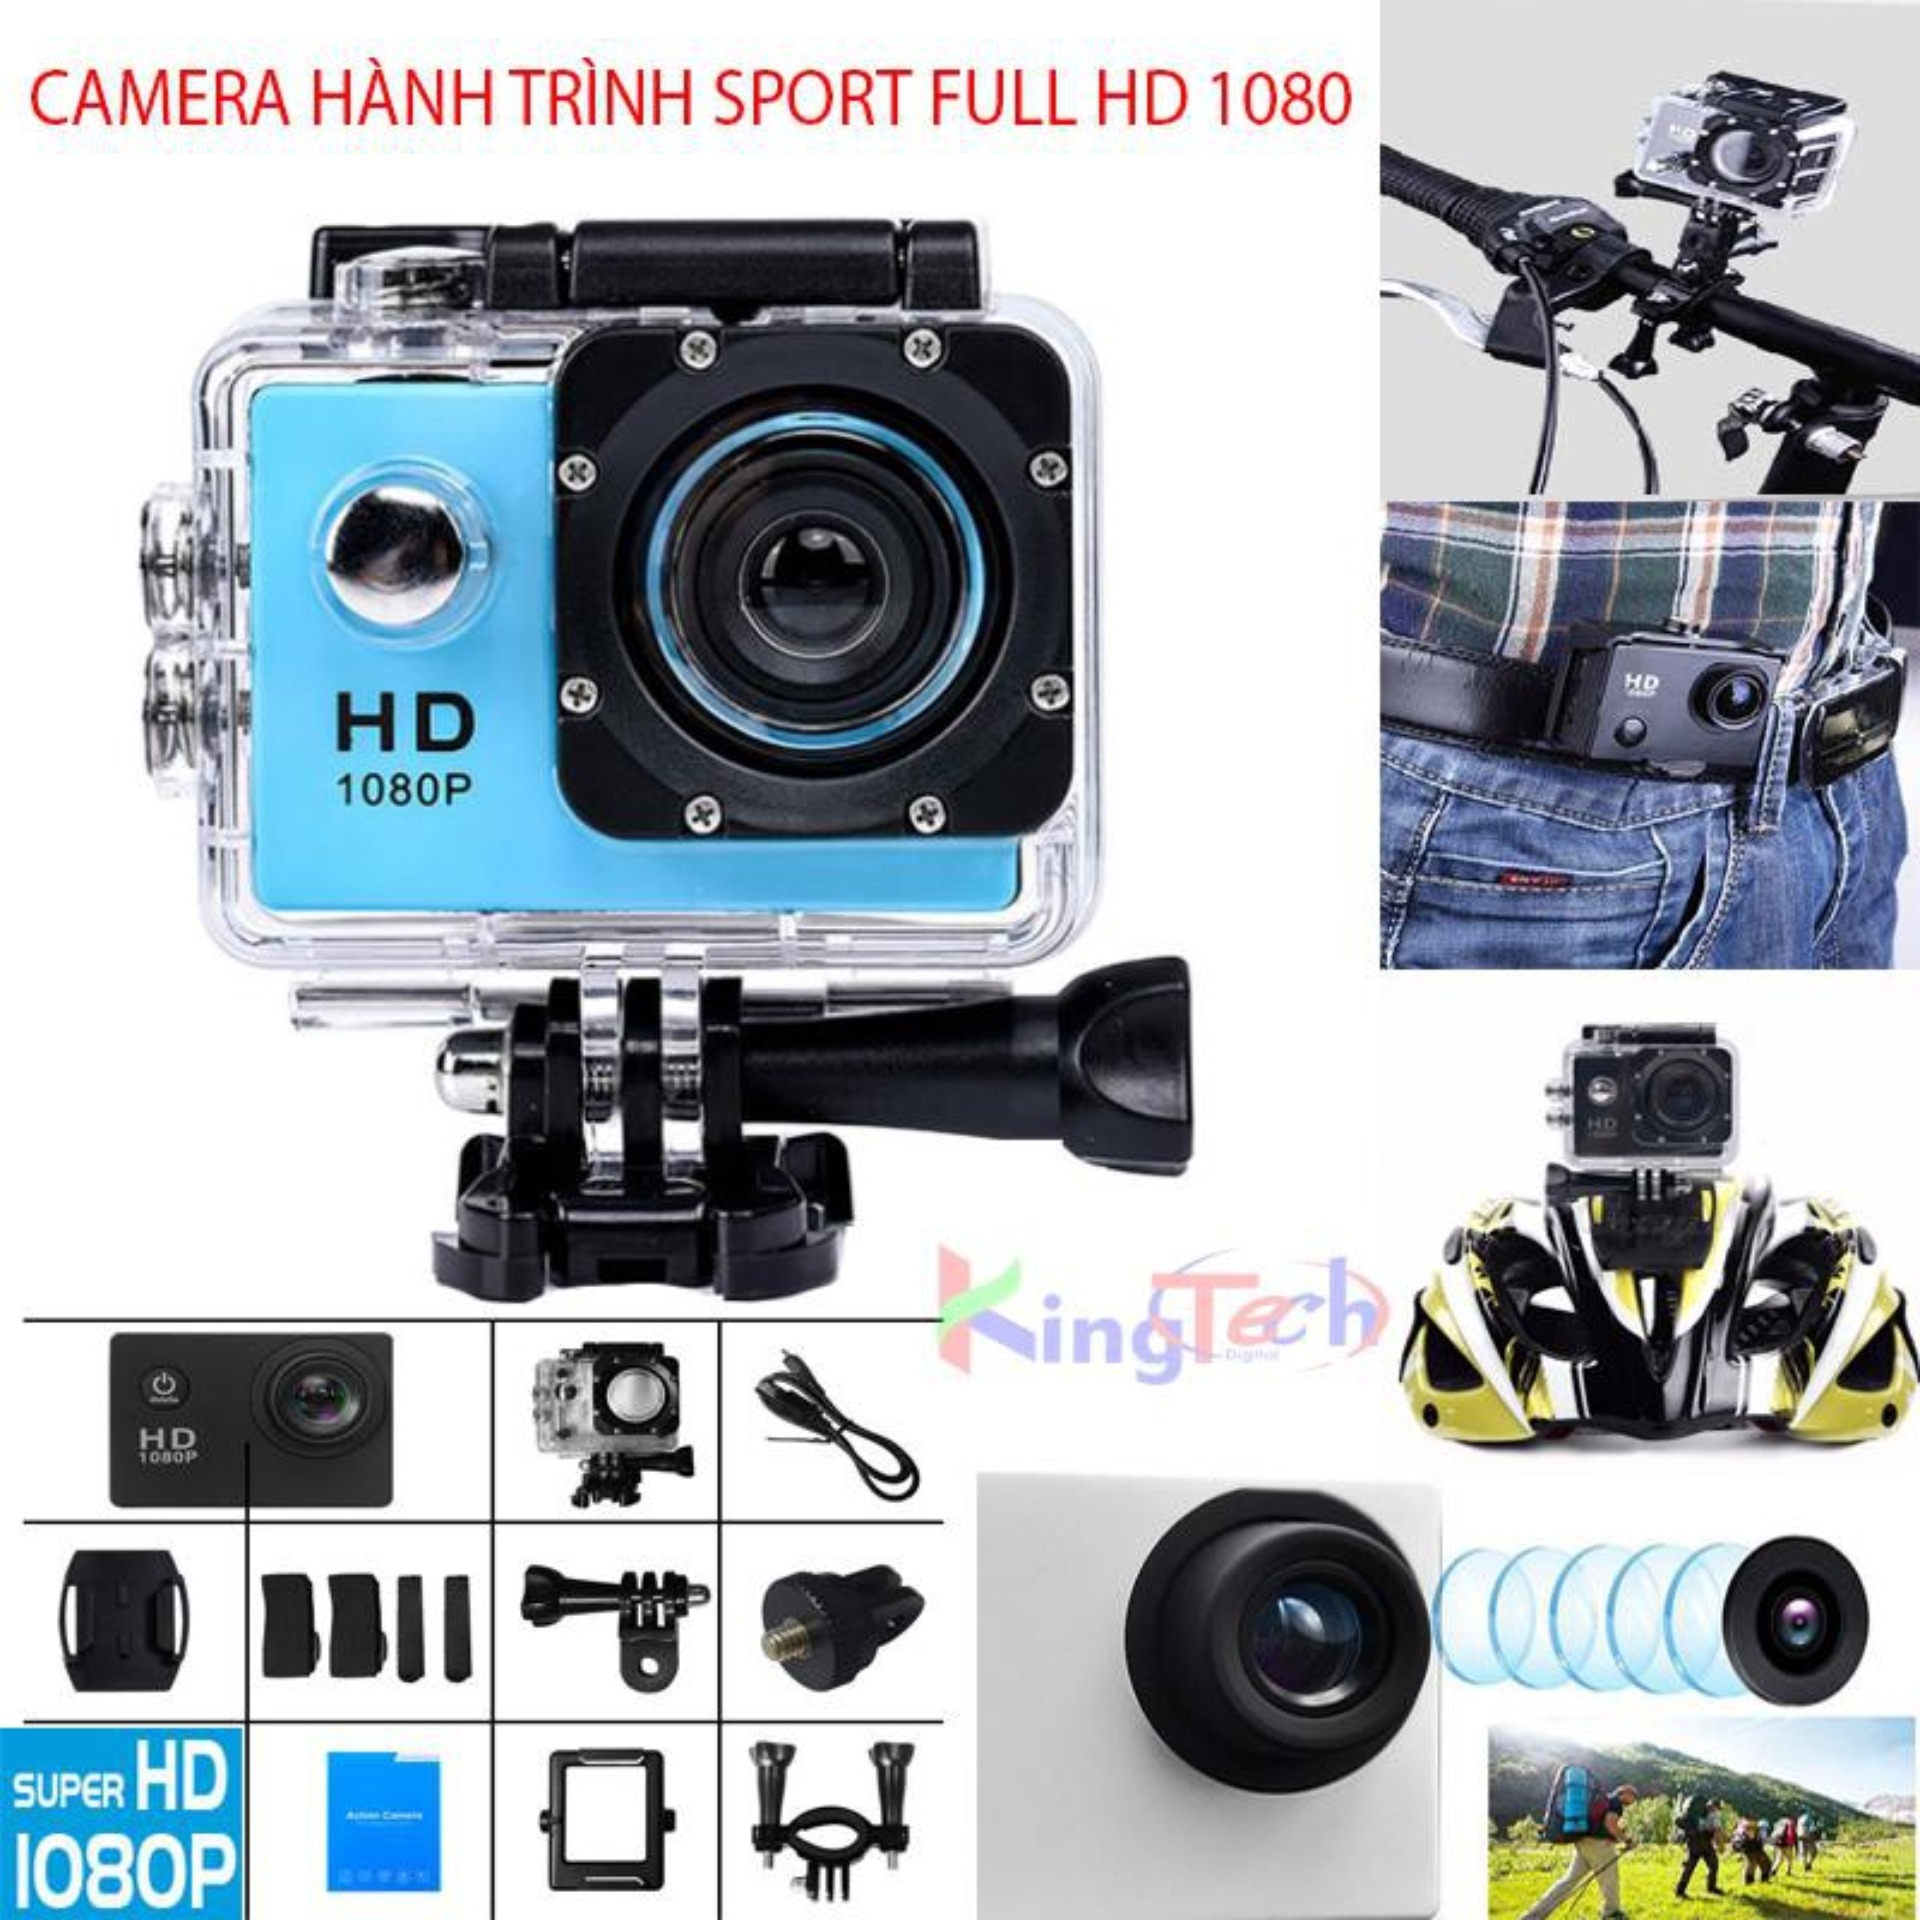 Camara chống rung - Camera hành trình Sport Cam HD 1080P,Cao cấp, Ghi hình sắc nét chân thực, Giảm giá...